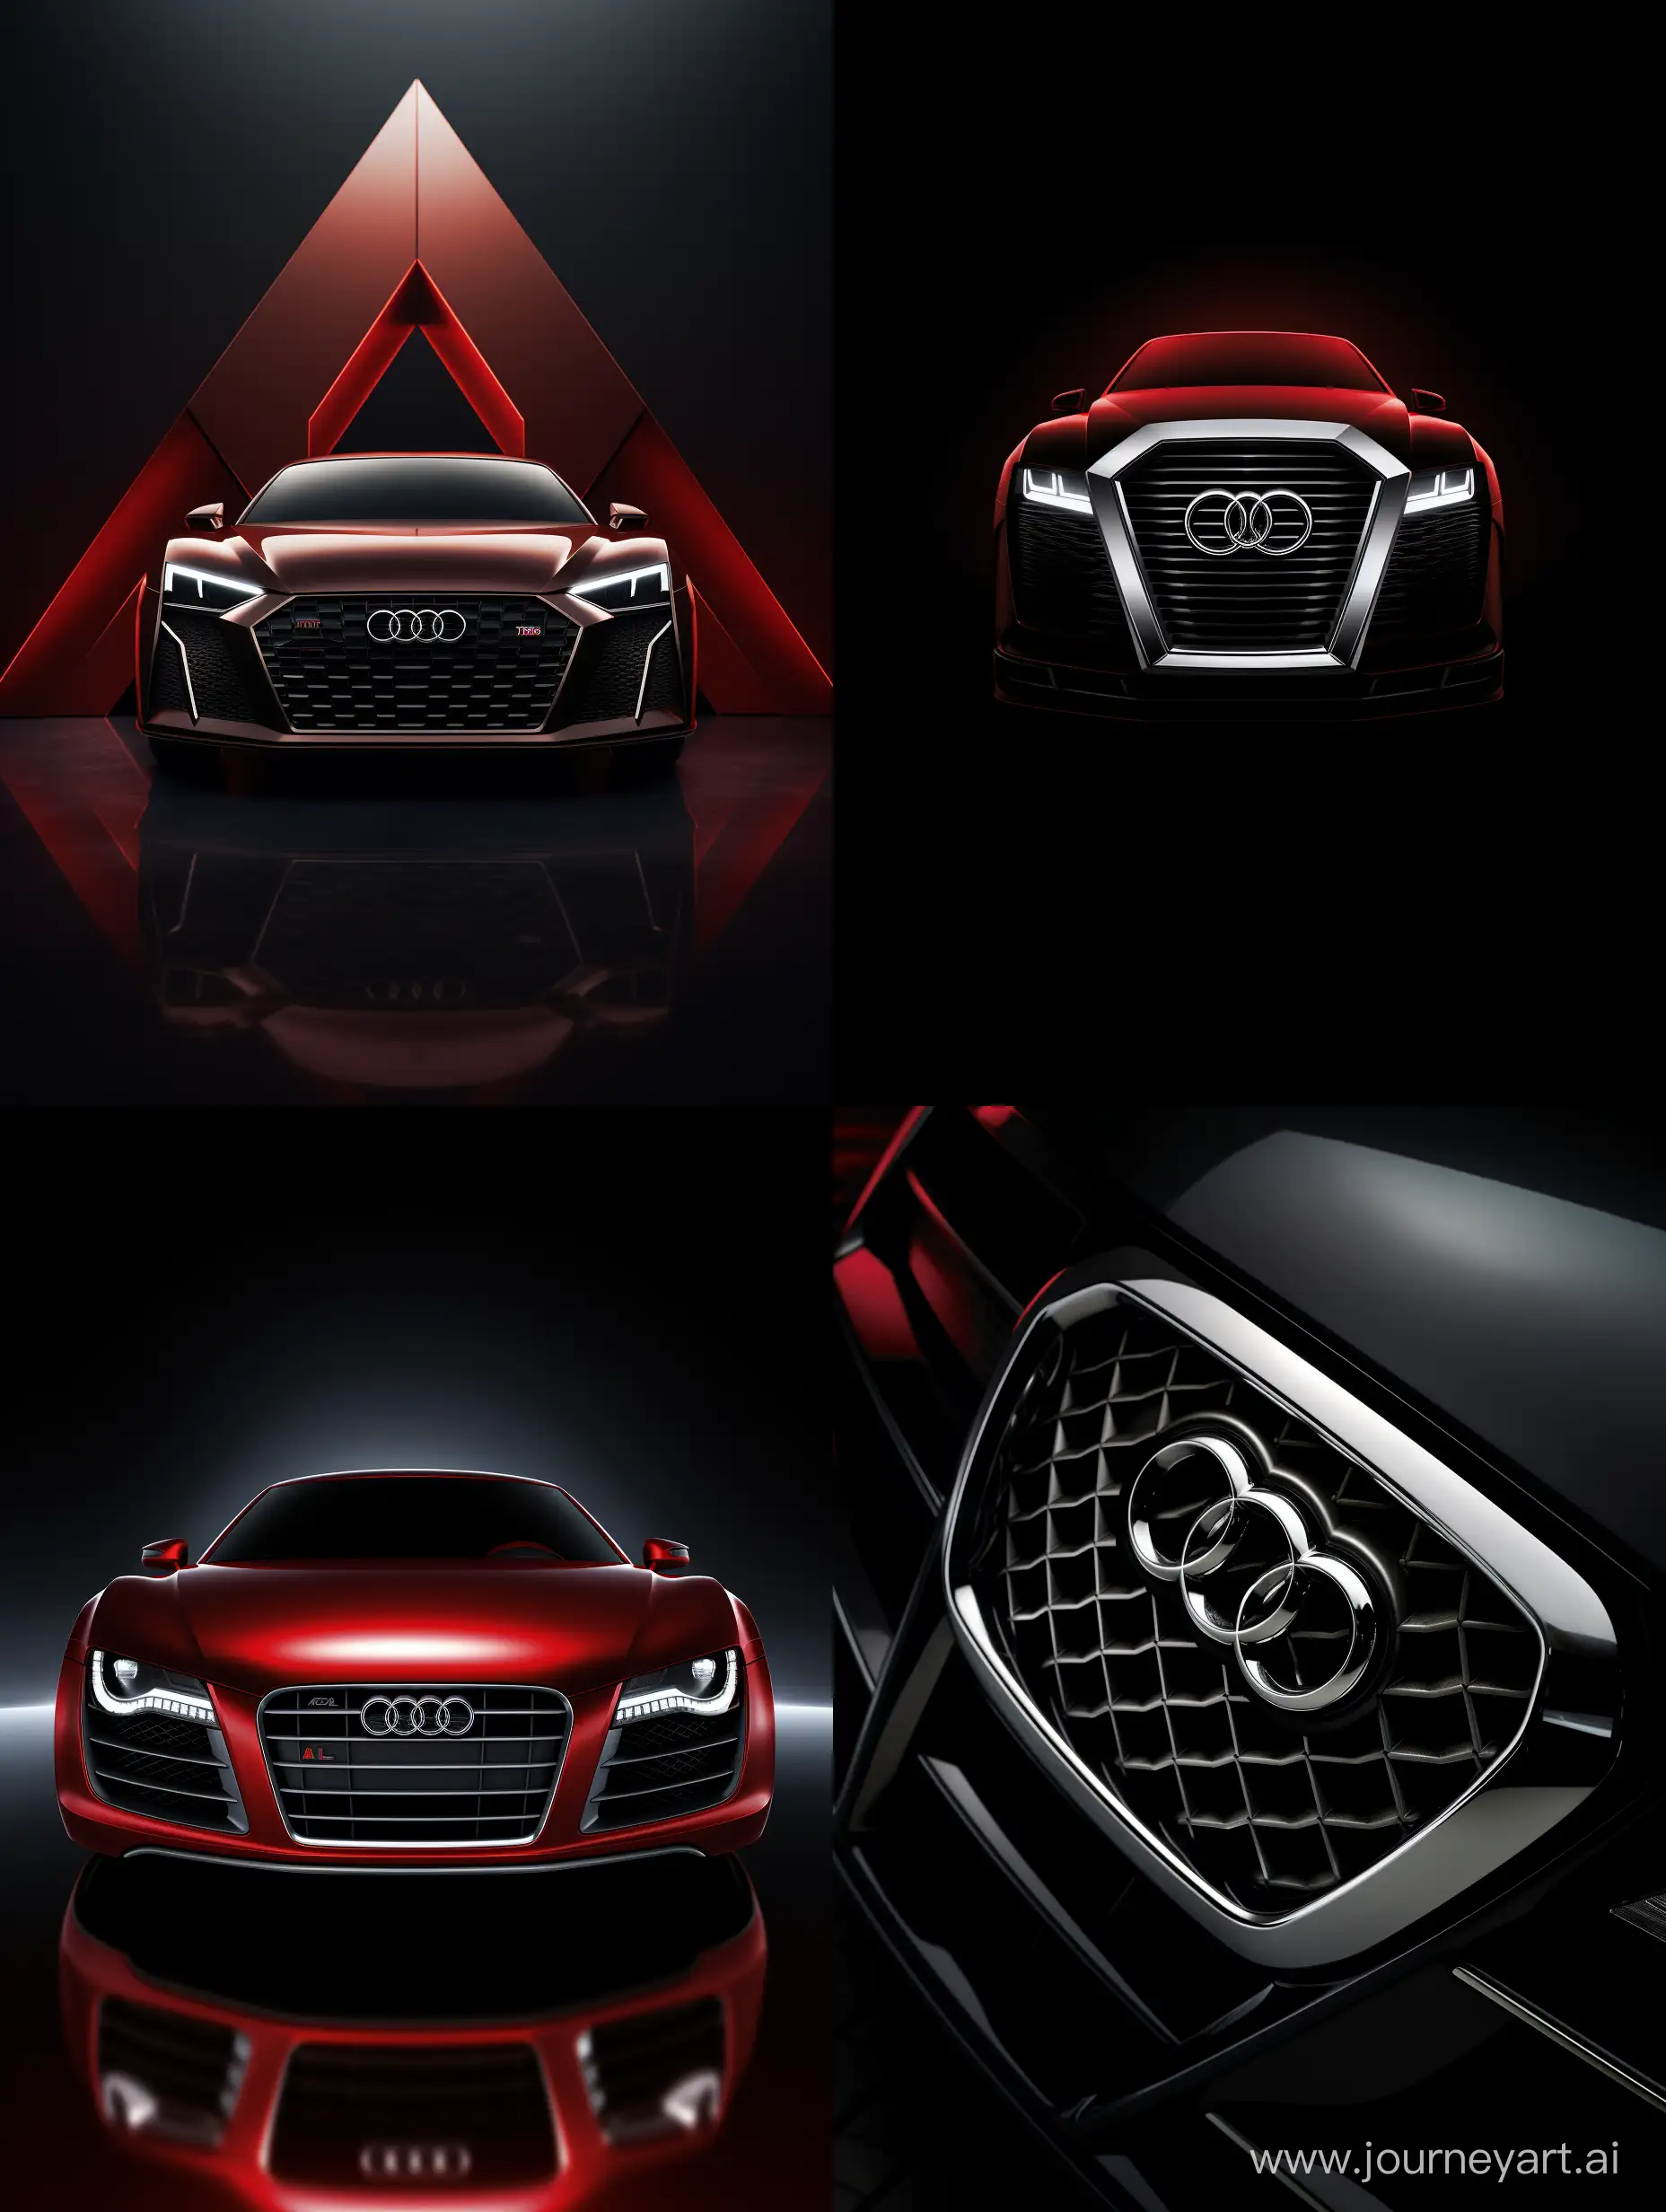 Audi-R8-Logo-in-Striking-34-Aspect-Ratio